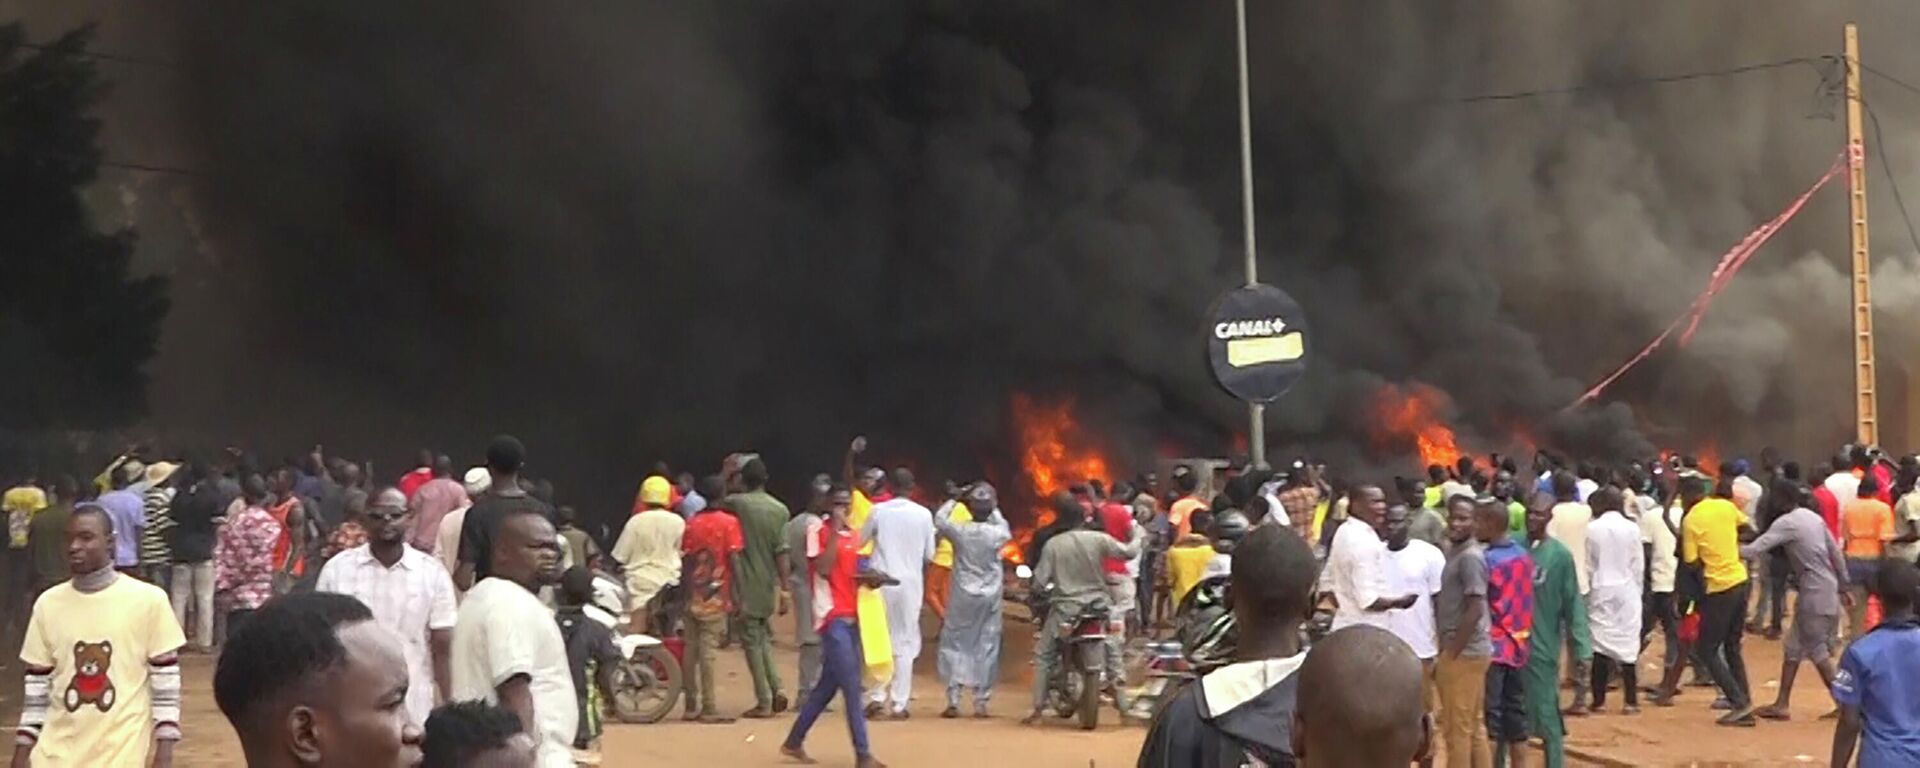 Con la sede del partido gobernante ardiendo por la espalda, partidarios de los soldados amotinados se manifiestan en Niamey, Níger, el jueves 27 de julio de 2023. - Sputnik Mundo, 1920, 27.07.2023